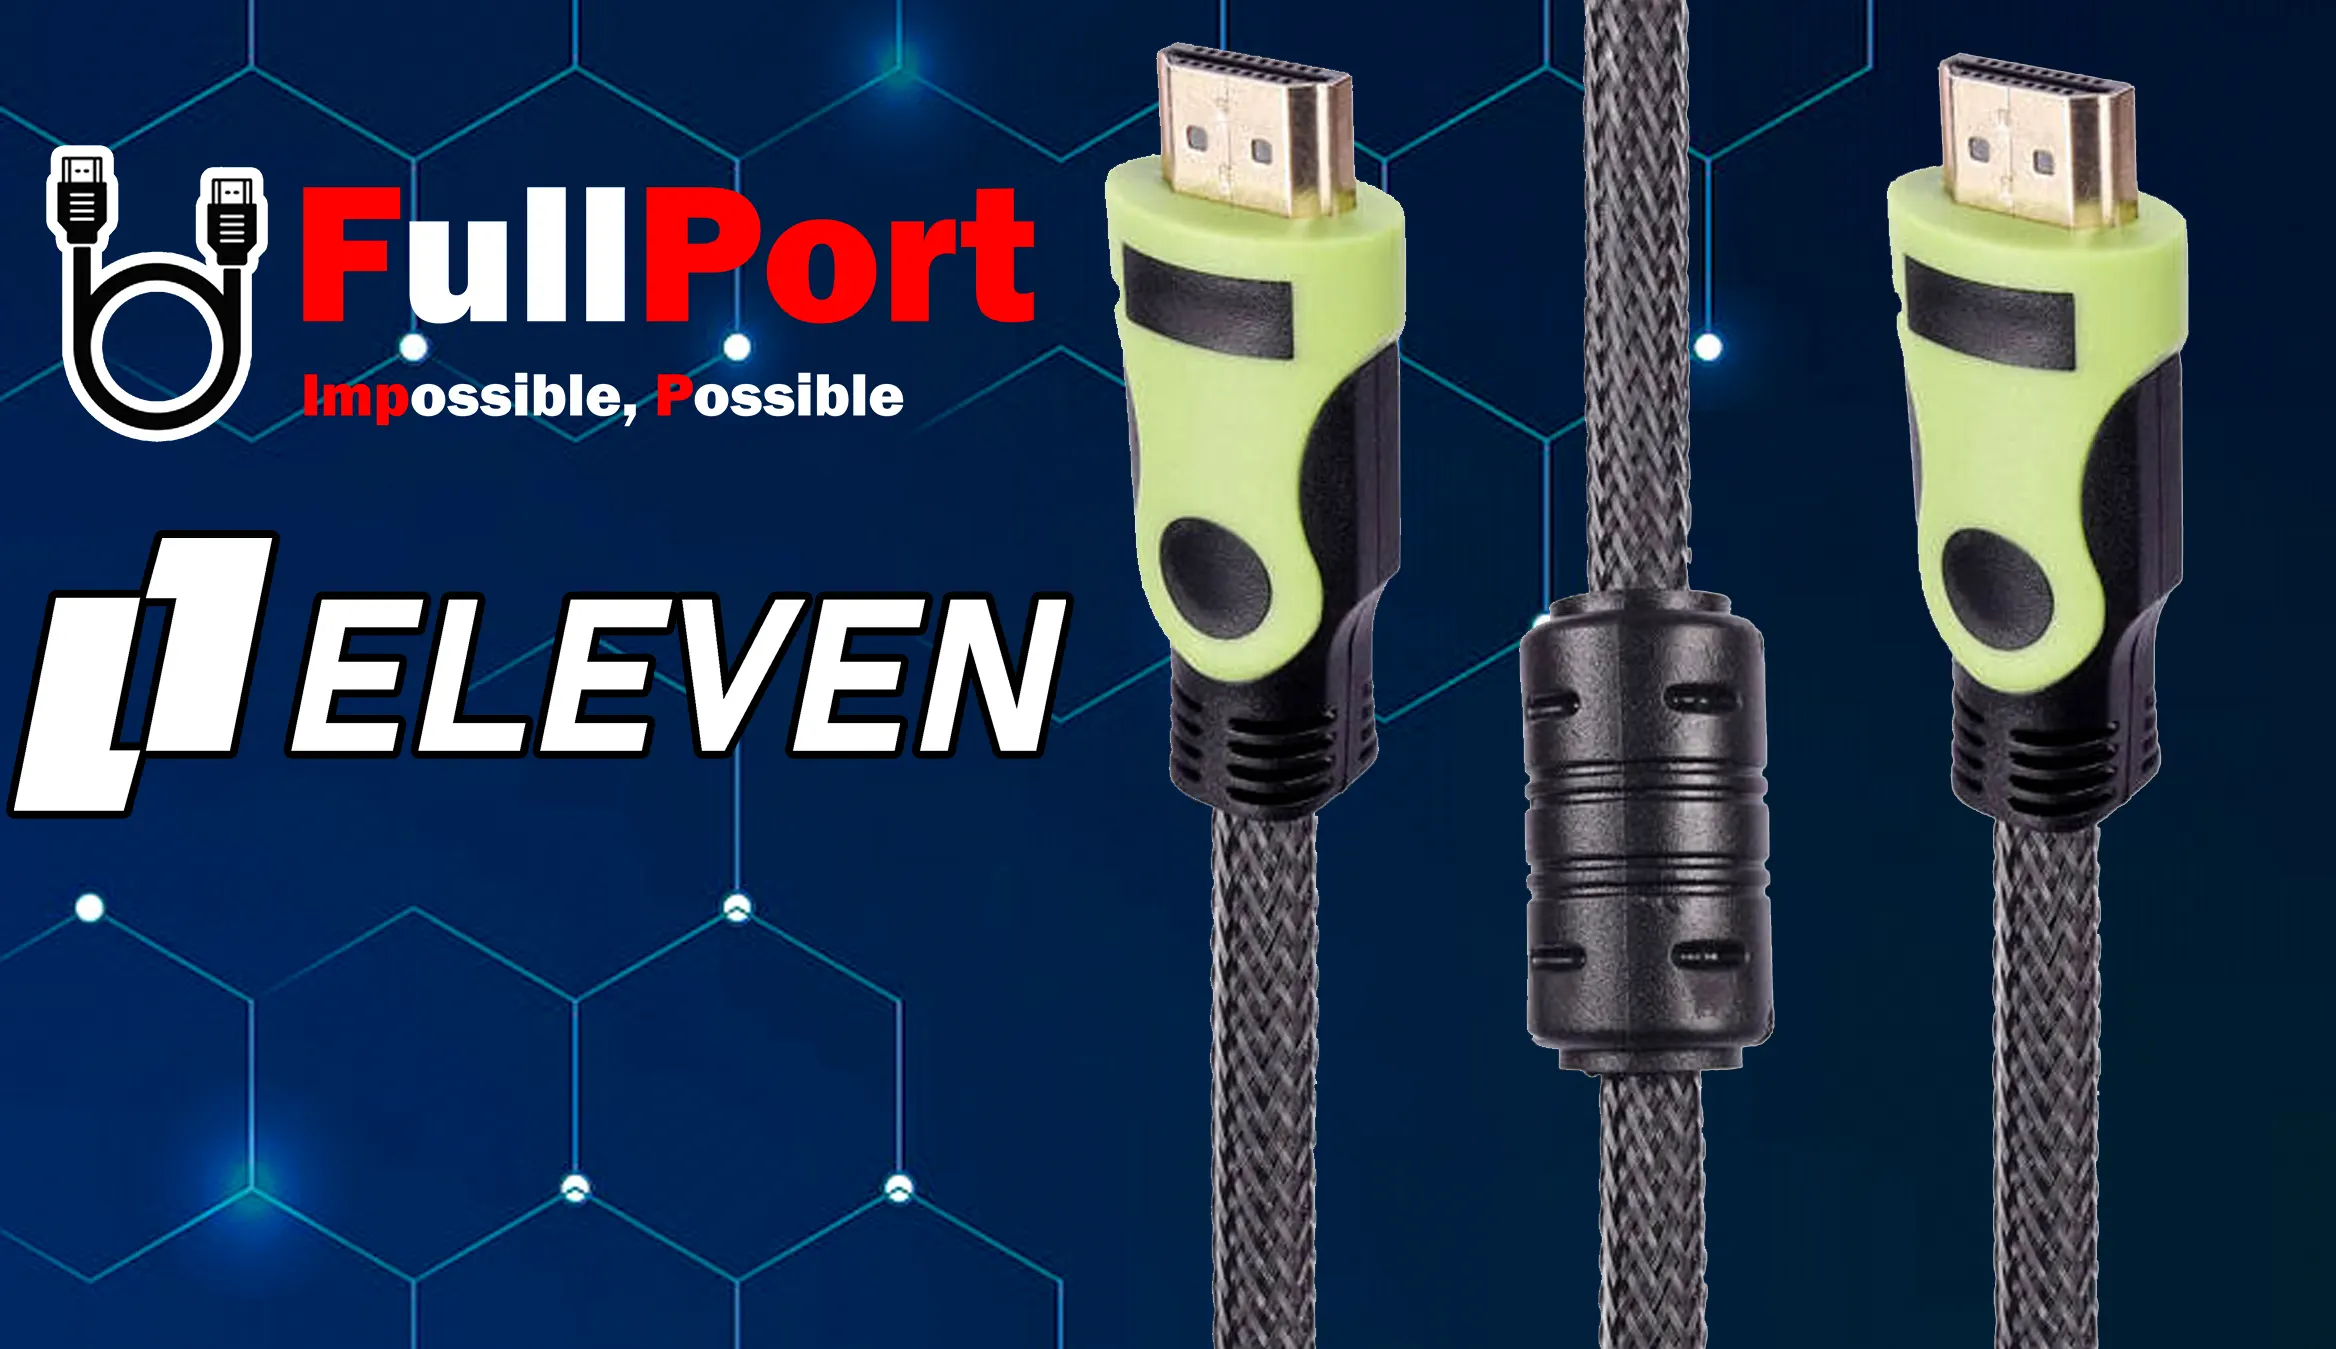 خرید اینترنتی کابل HDMI ایلون | ELEVEN با گارانتی ایلون 1 سال از فروشگاه اینترنتی فول پورت